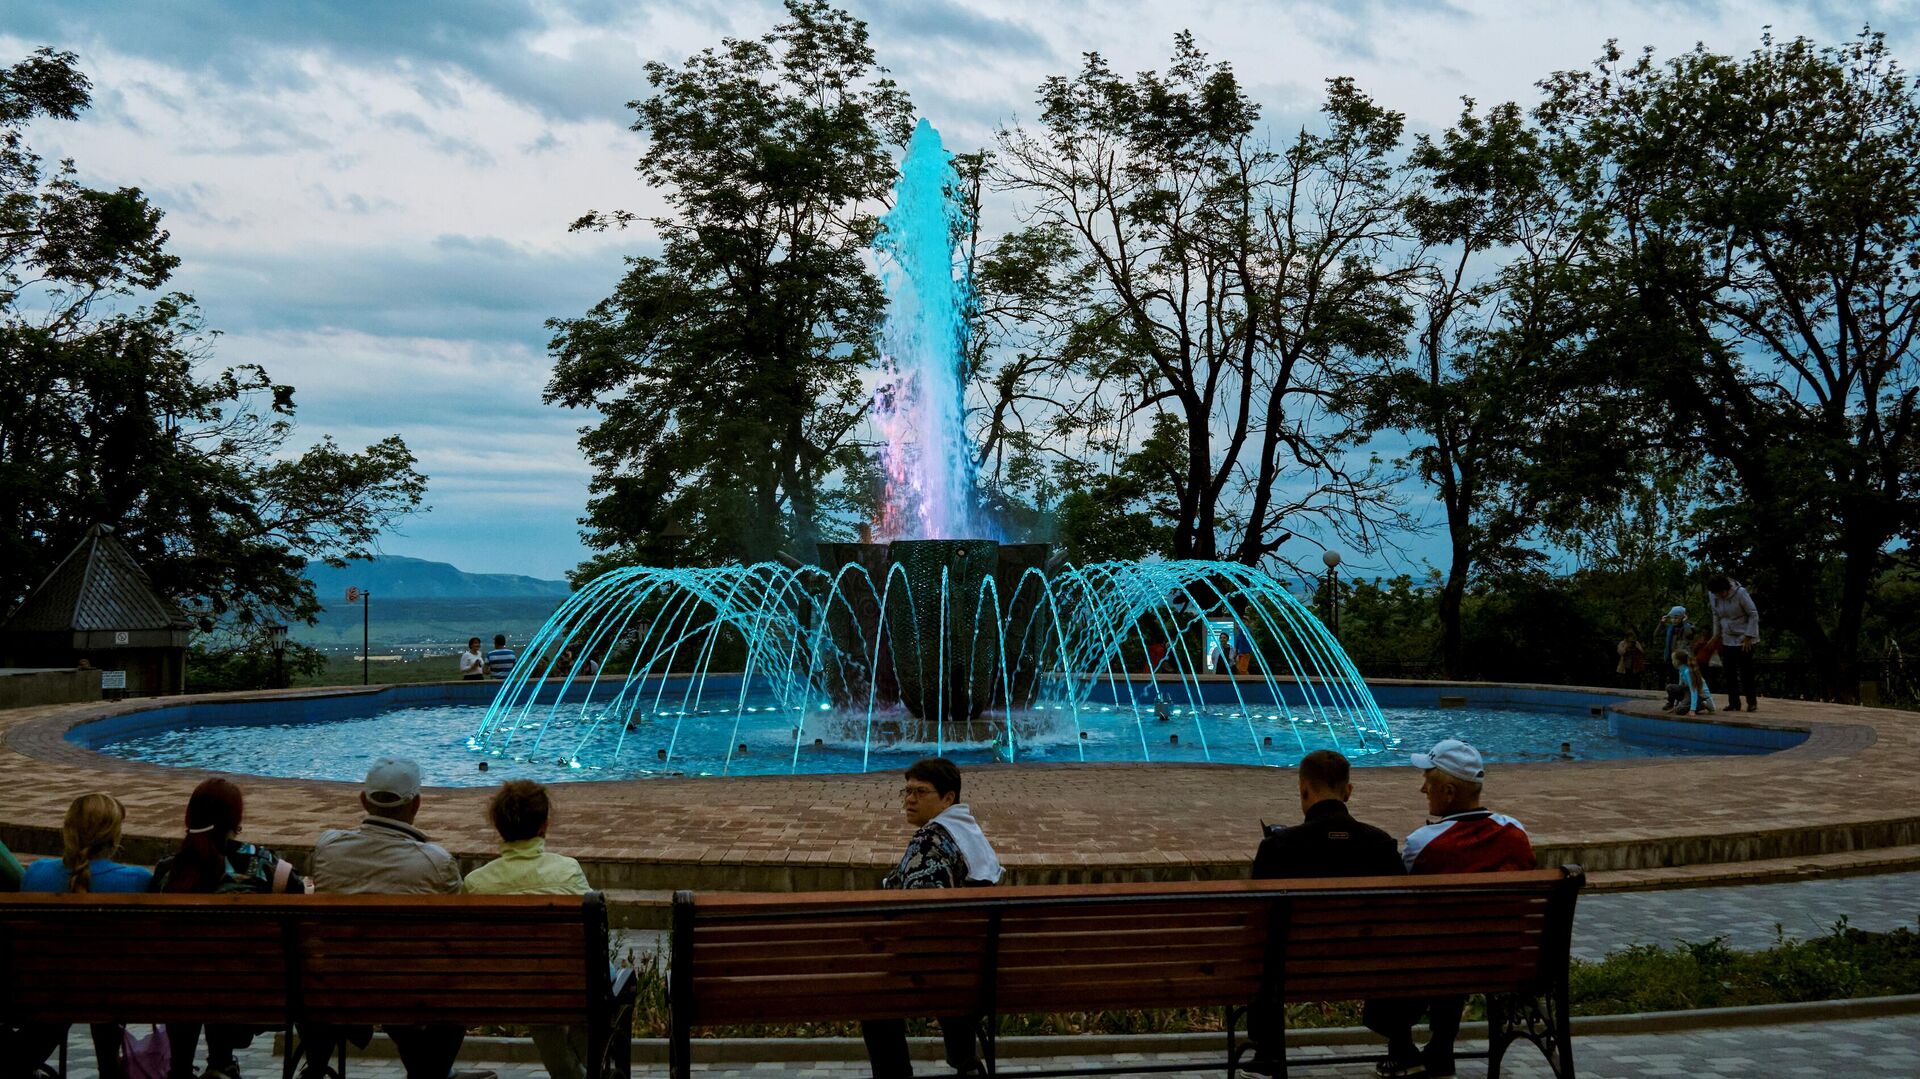 Отдыхающие возле фонтана “Каскад” у Смирновского минерального источника в Лечебном парке в Железноводске - РИА Новости, 1920, 18.06.2021